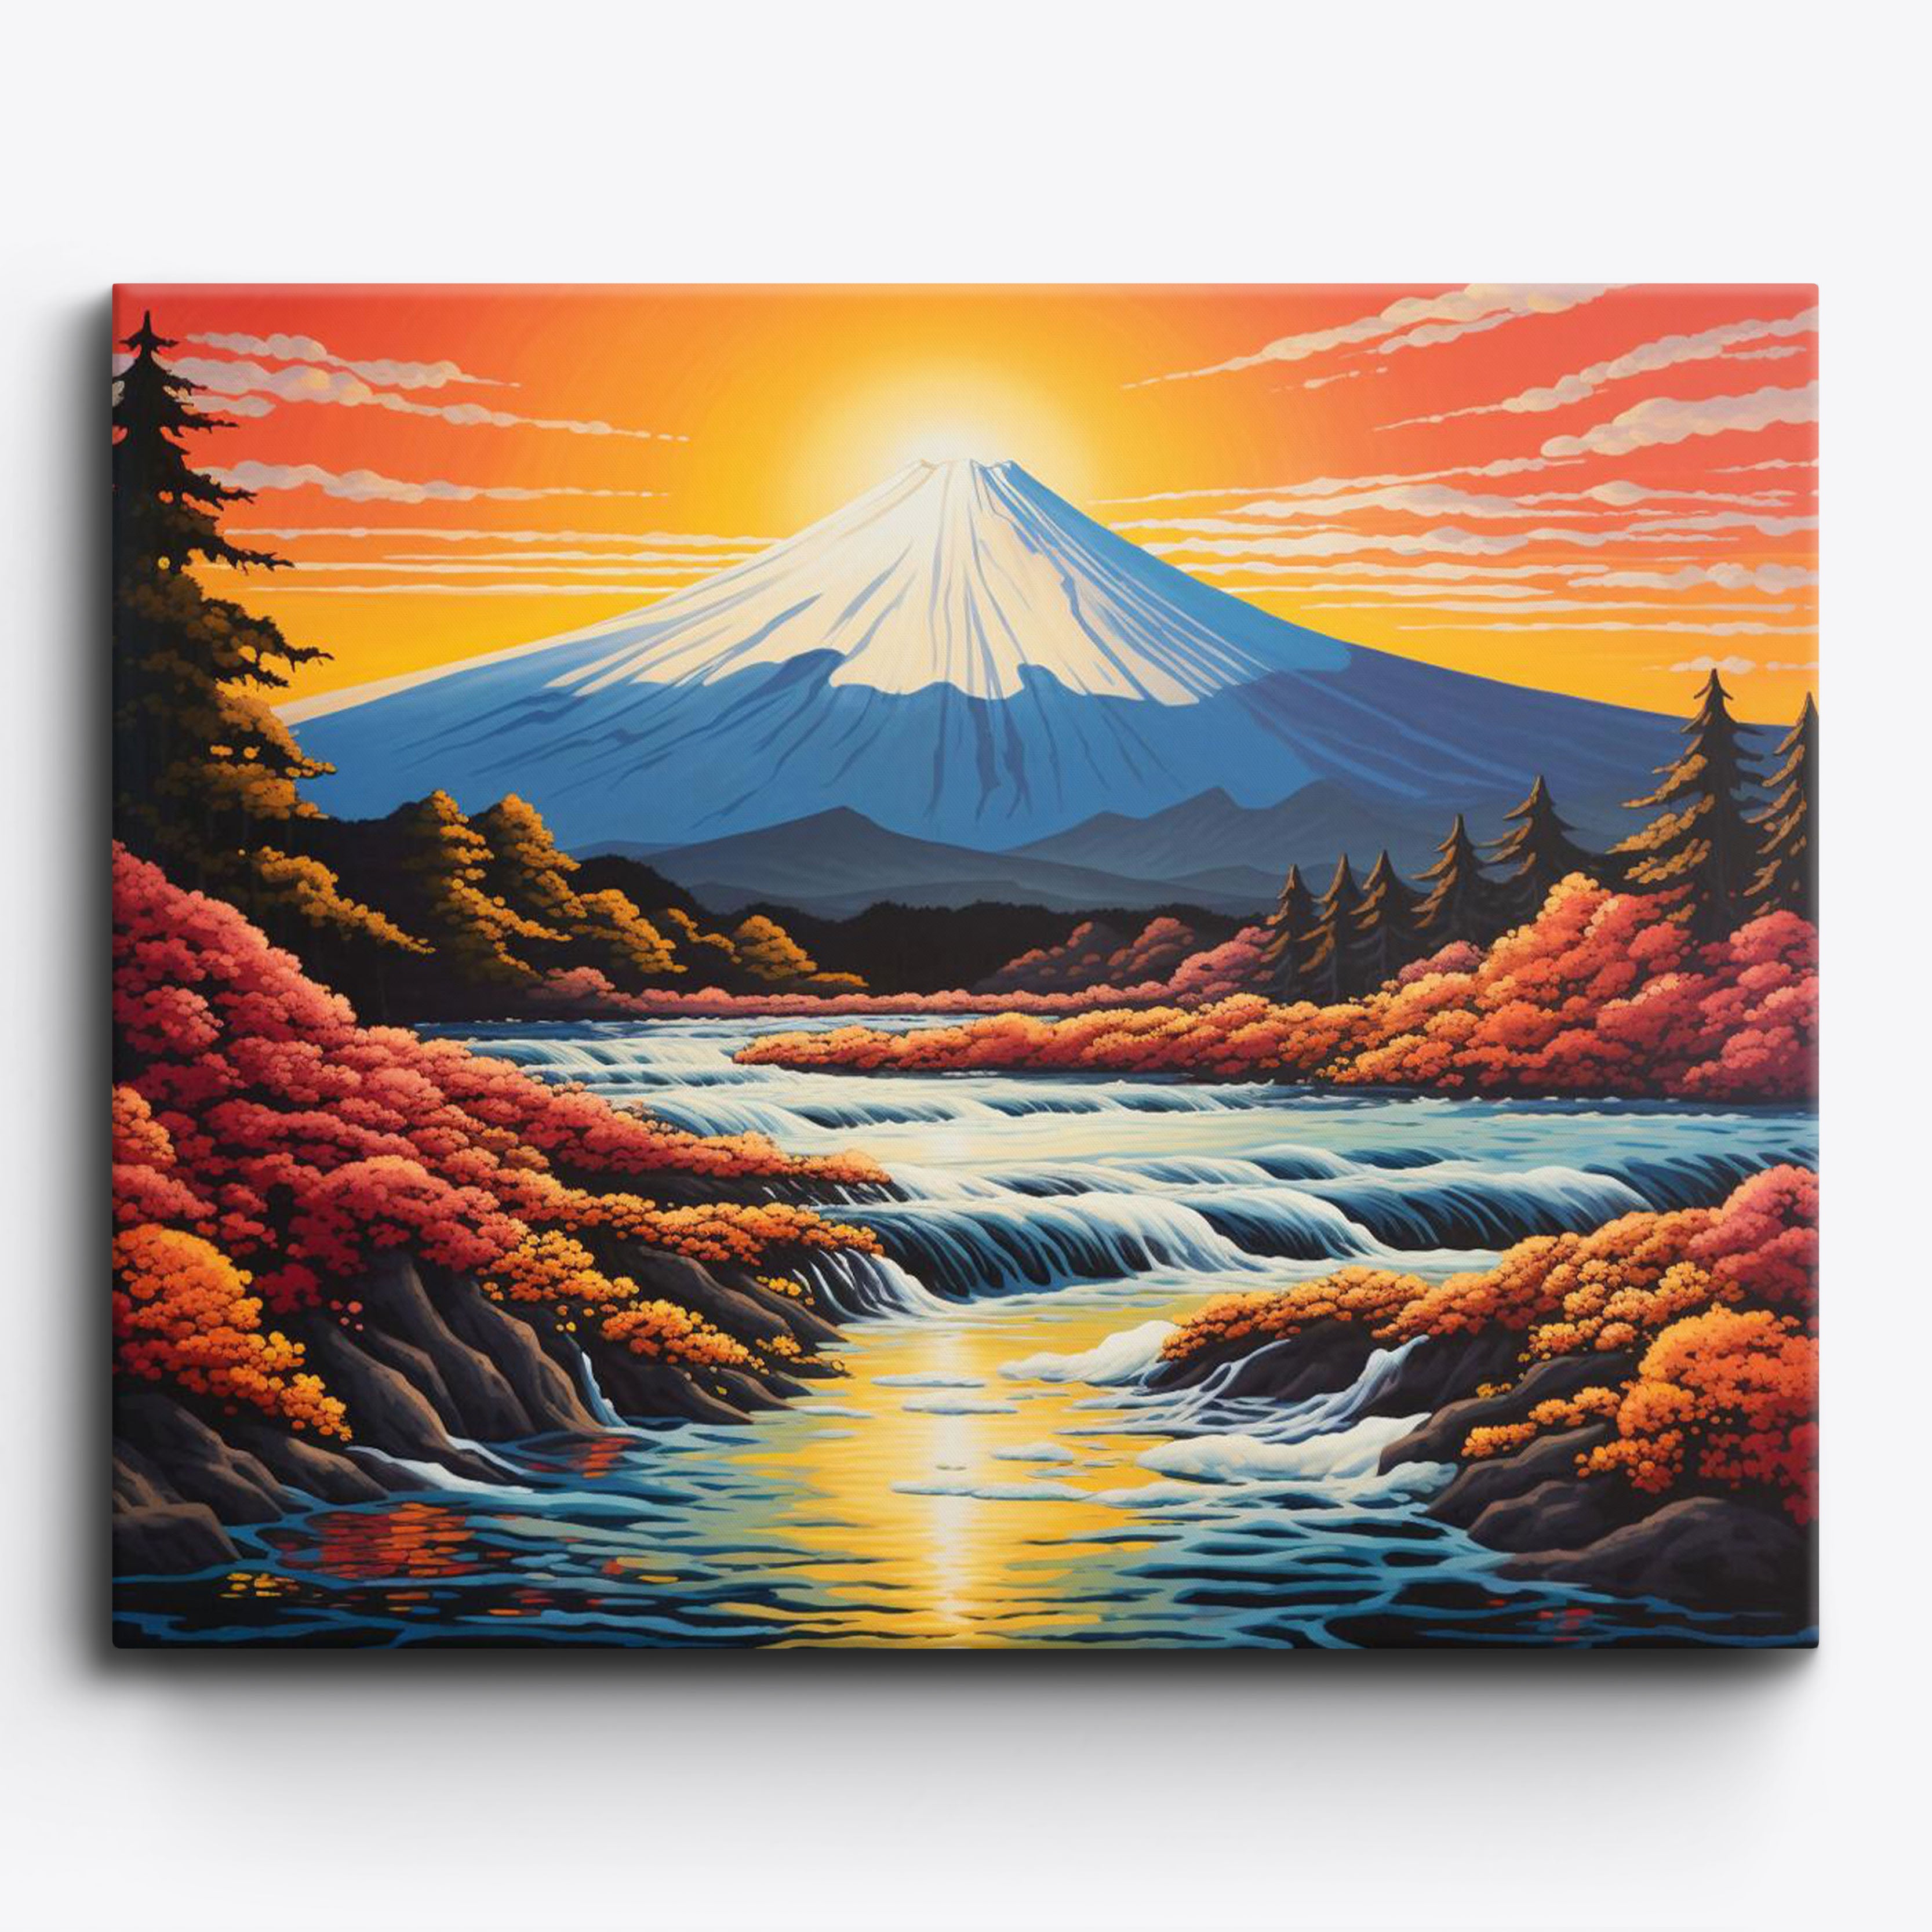 Mount Fuji Sunset No Frame